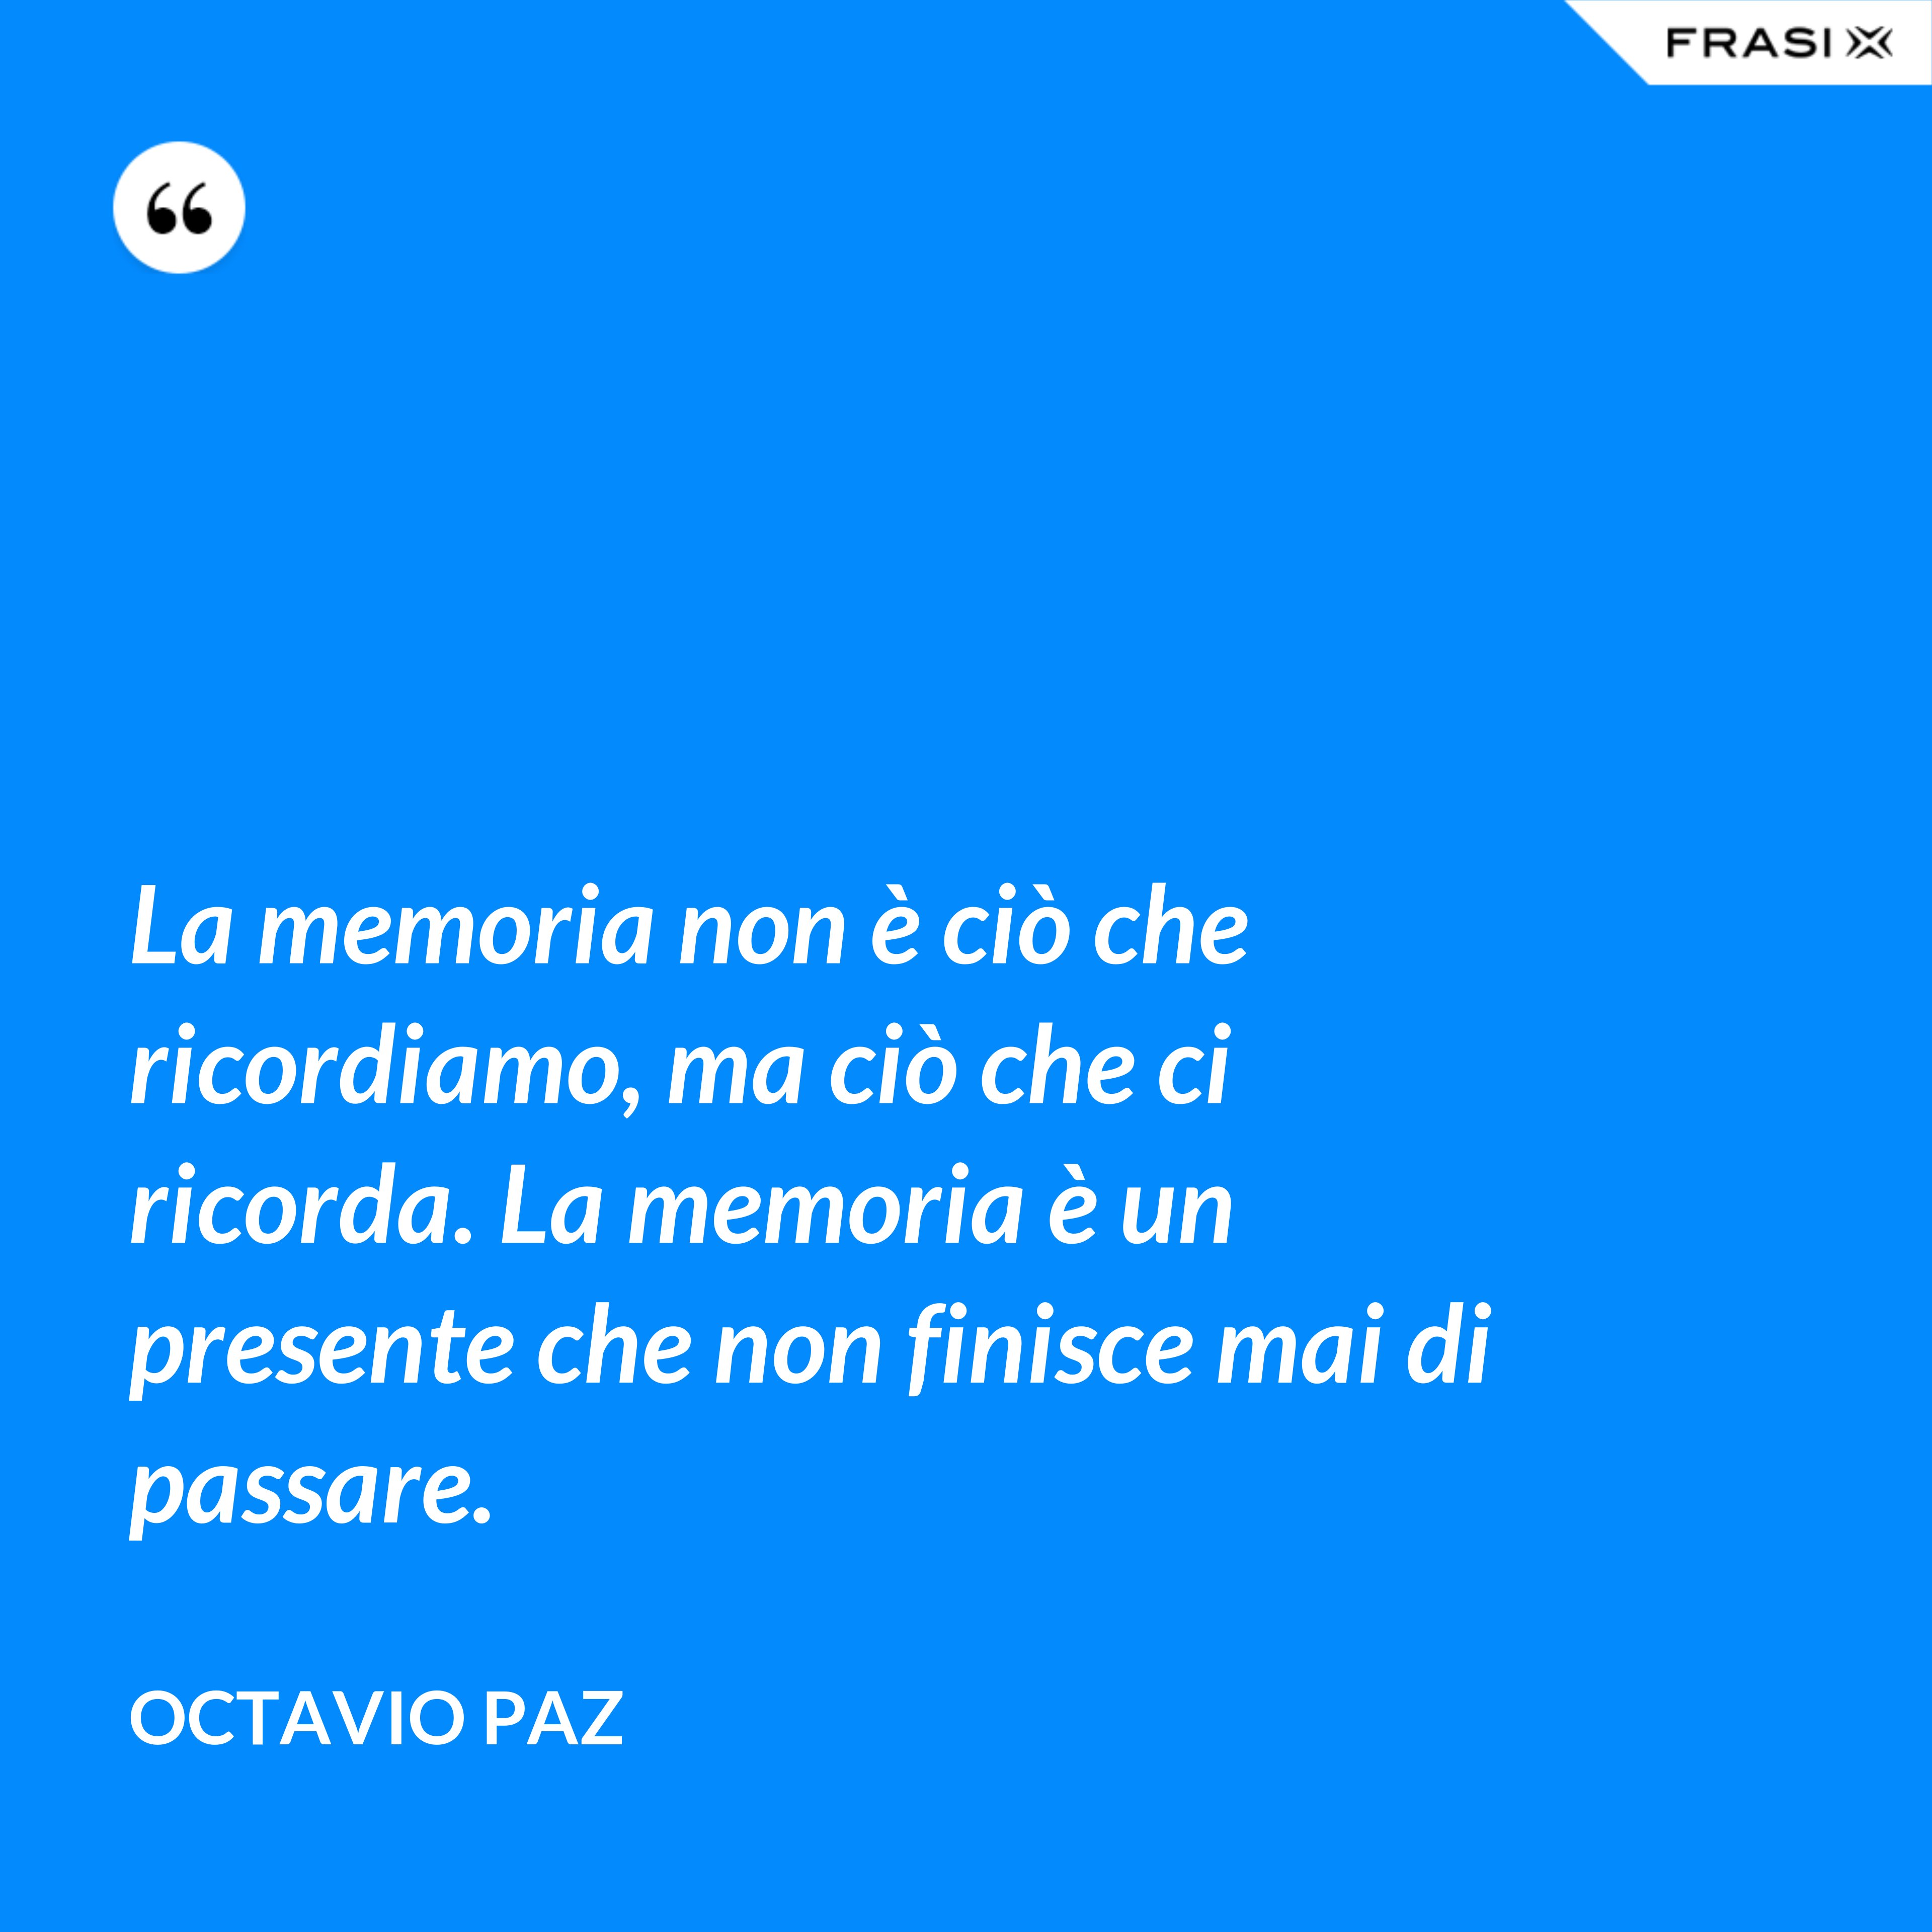 La memoria non è ciò che ricordiamo, ma ciò che ci ricorda. La memoria è un presente che non finisce mai di passare. - Octavio Paz